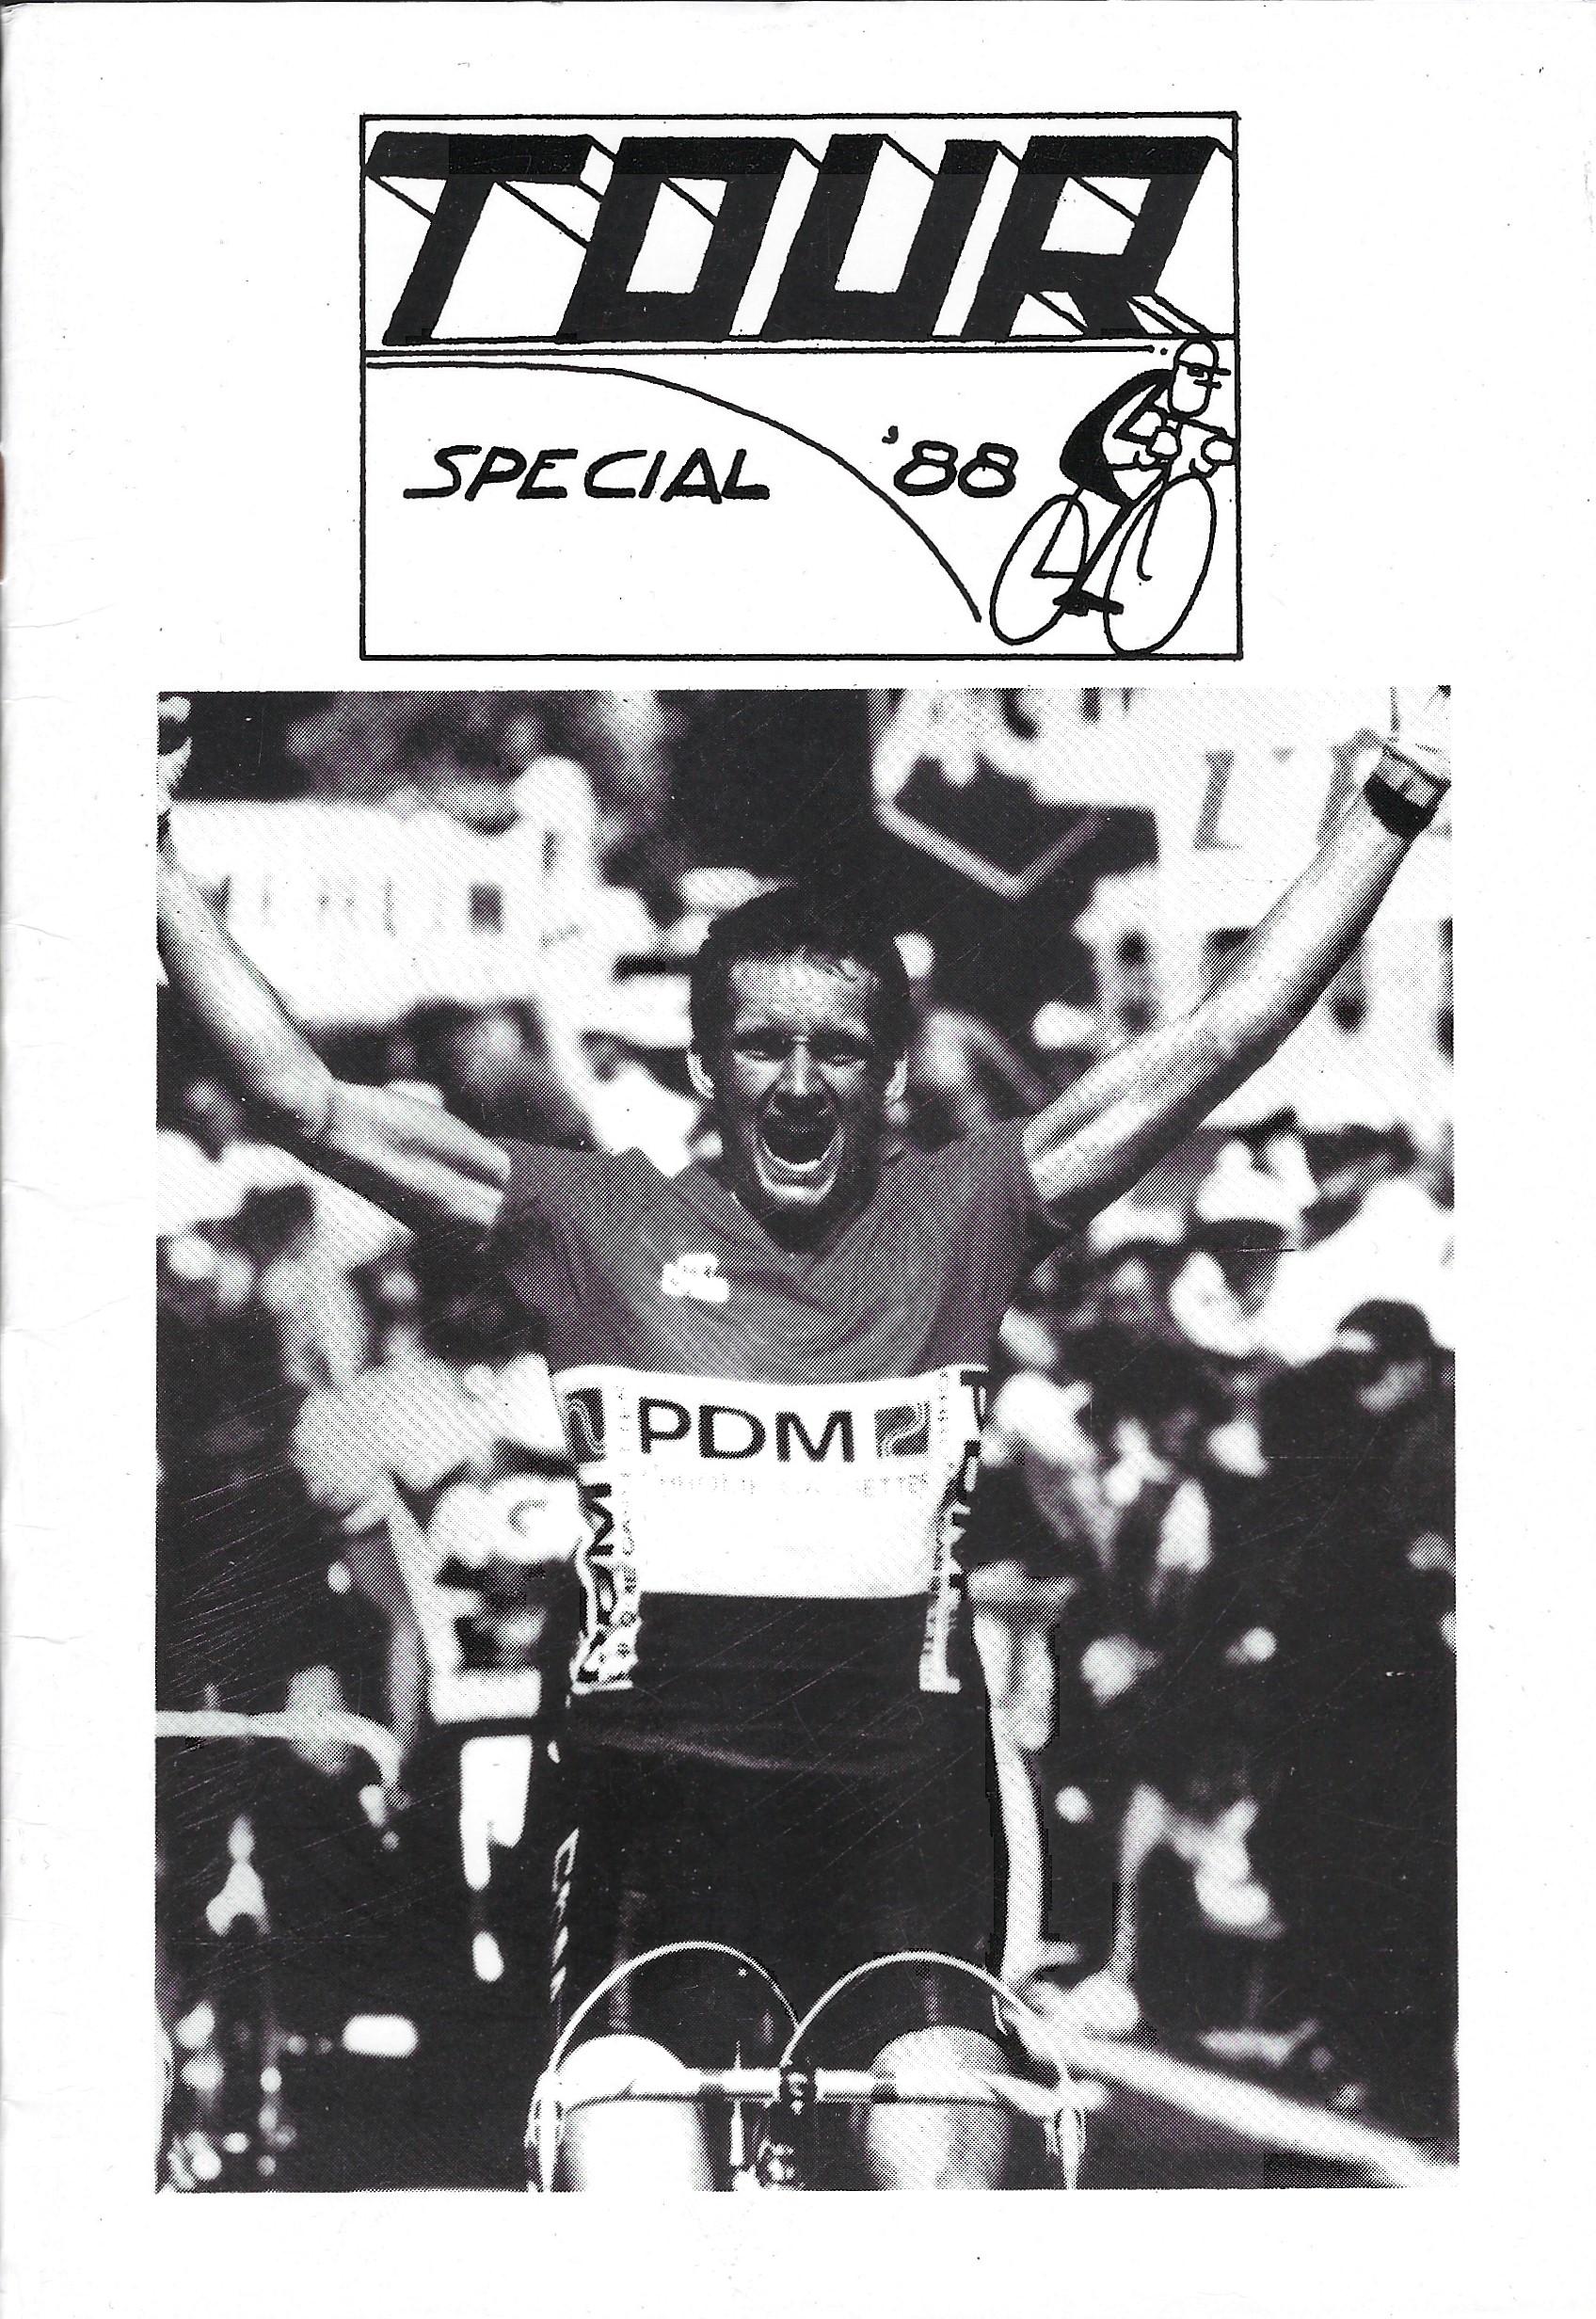 Redactie - De gehele uitgave van Tour Special 1988-2015 -Tour de France